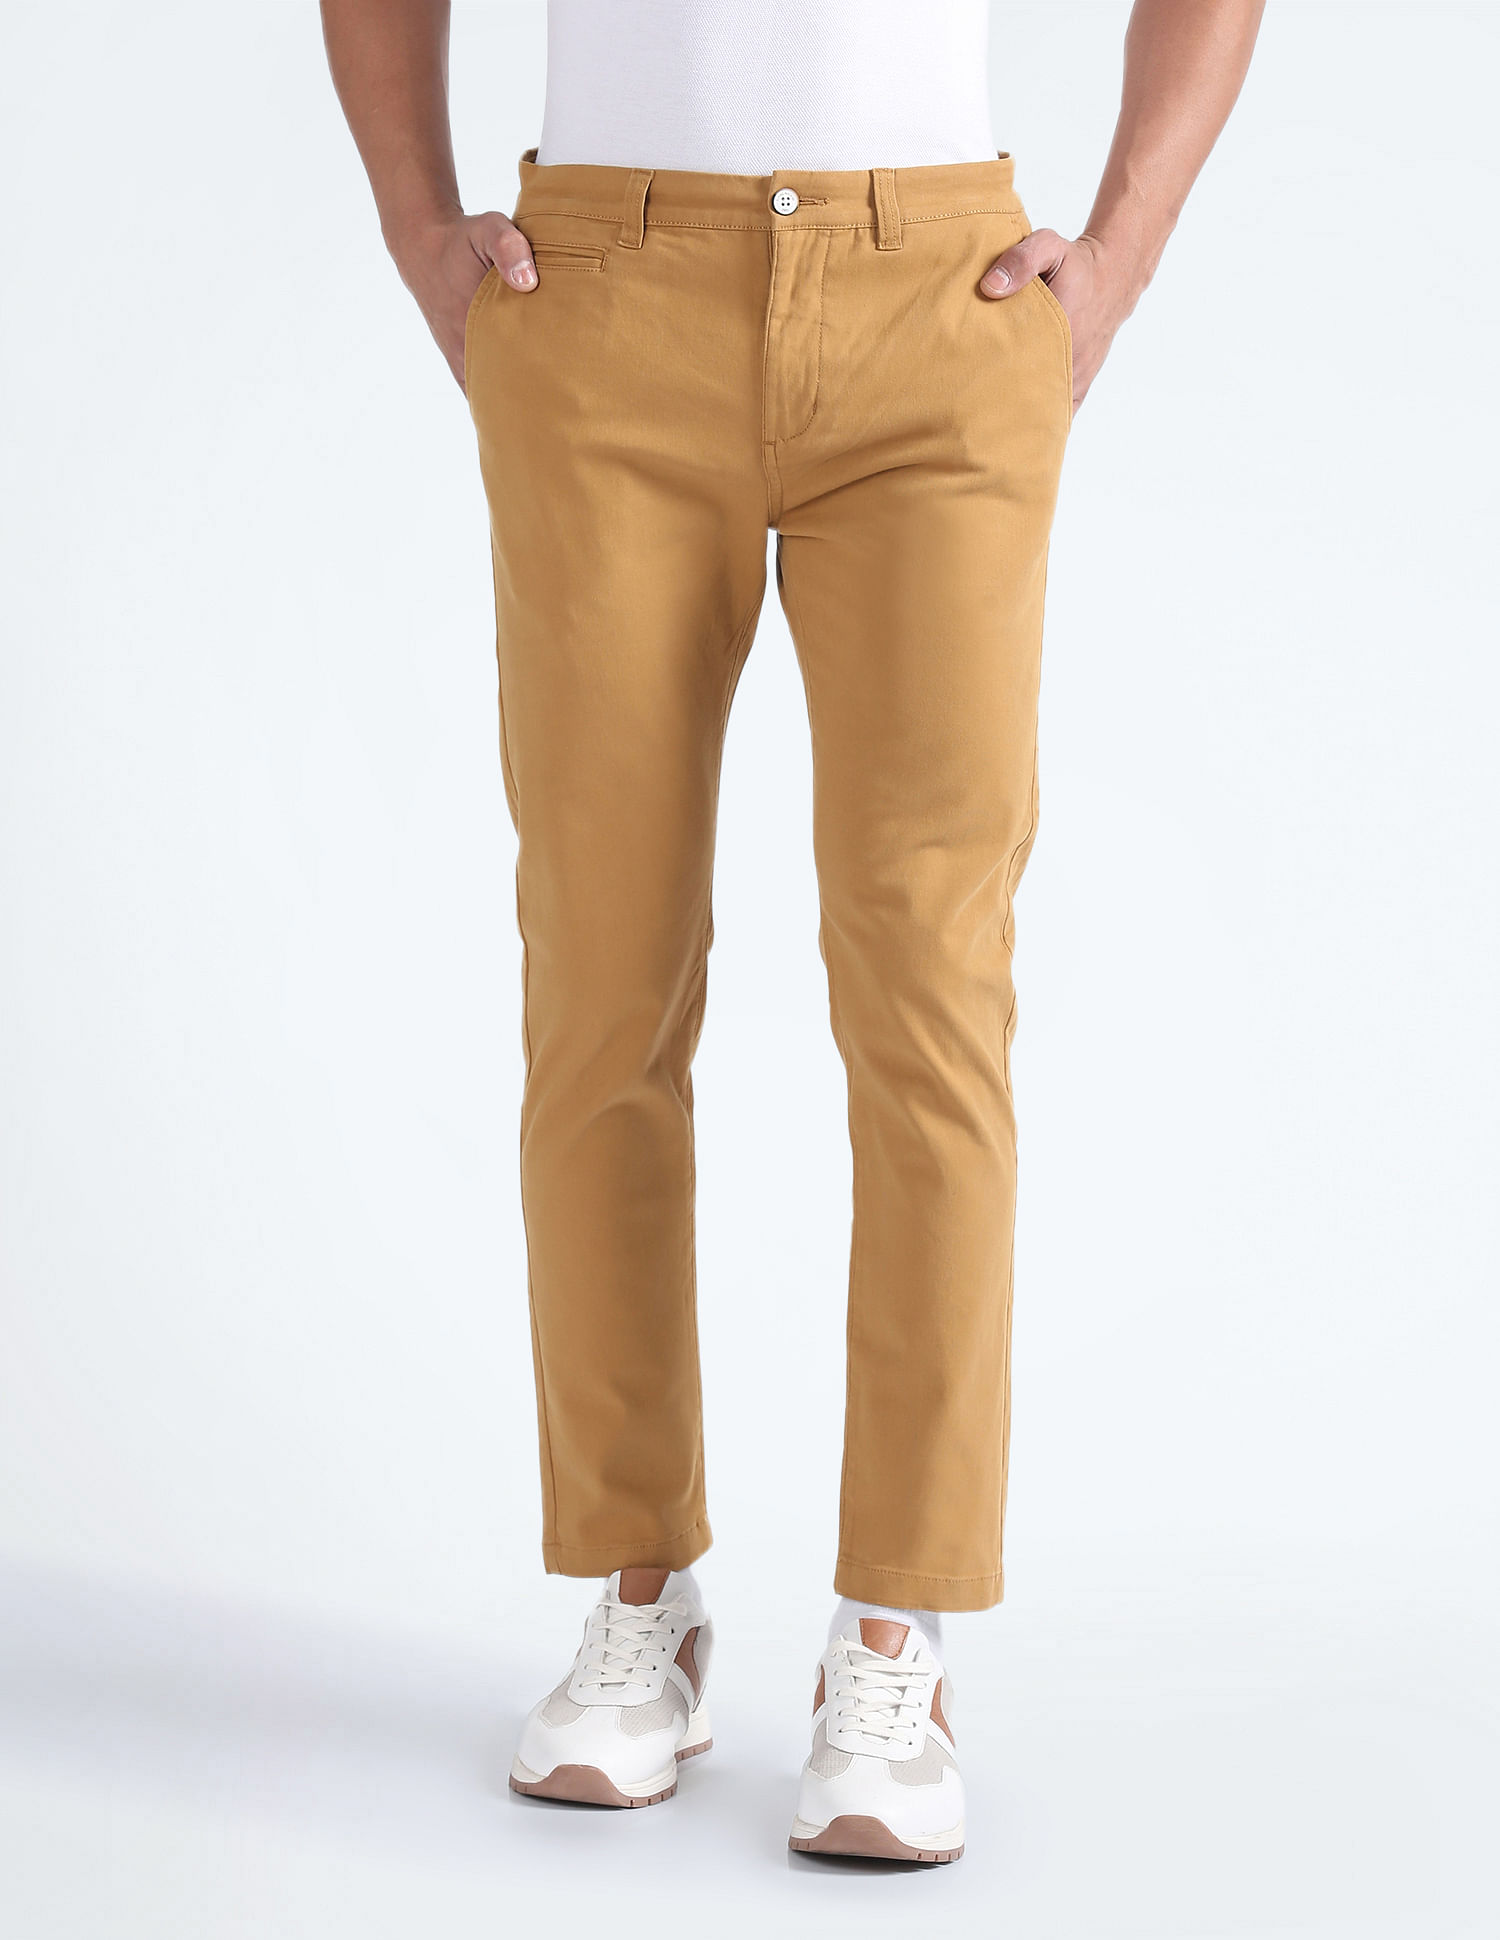 ASOS DESIGN skinny suit pants in khaki twill | ASOS